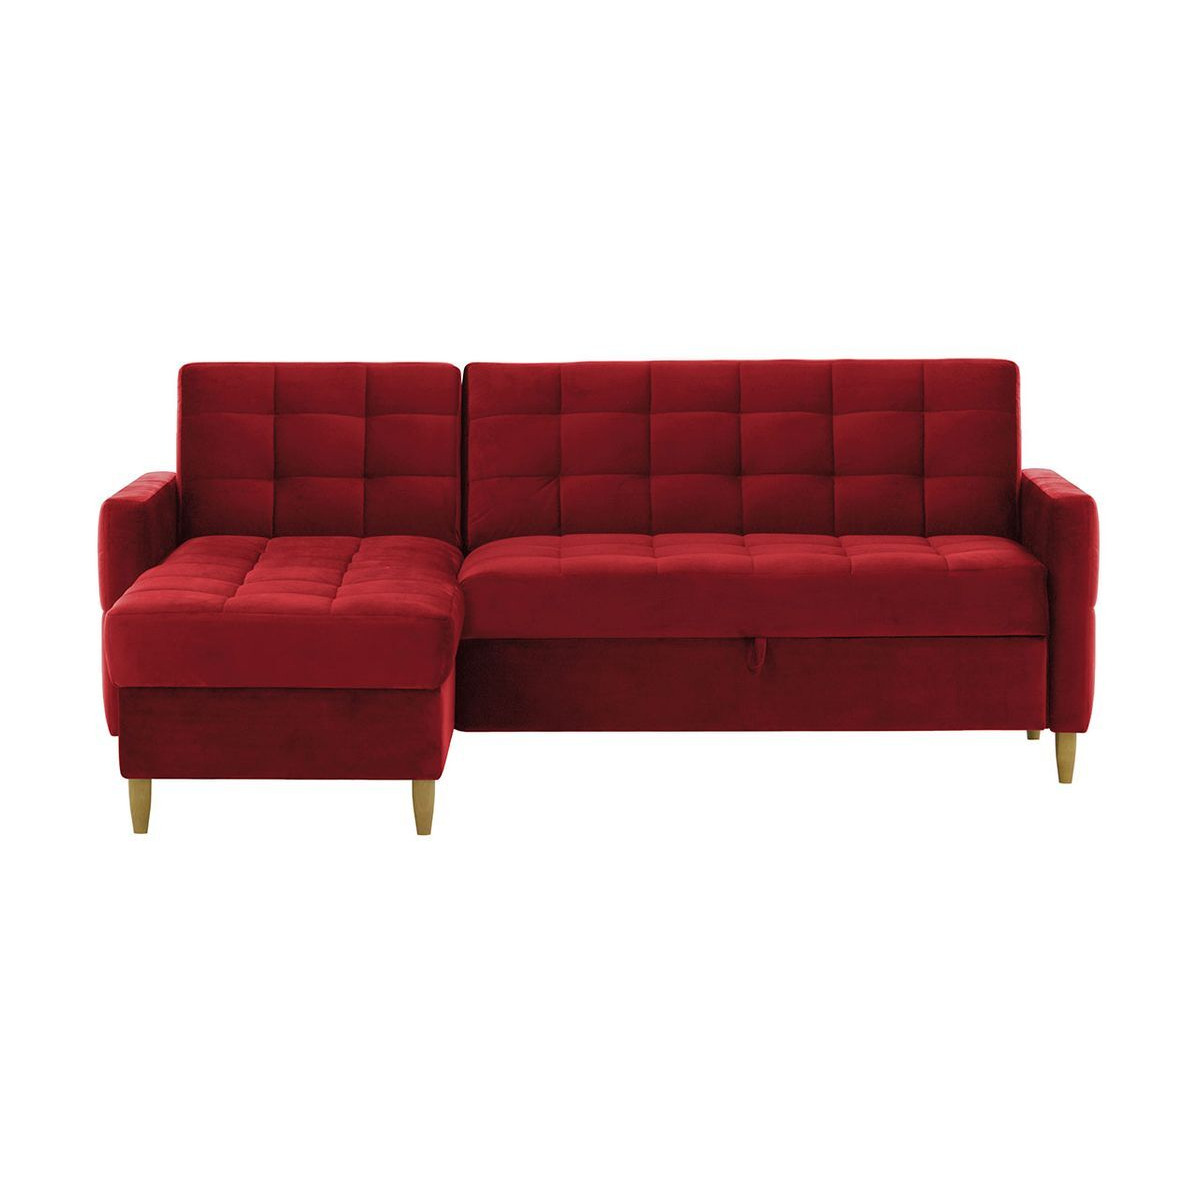 Velocity Universal Corner Sofa Bed With Storage, dark red - image 1